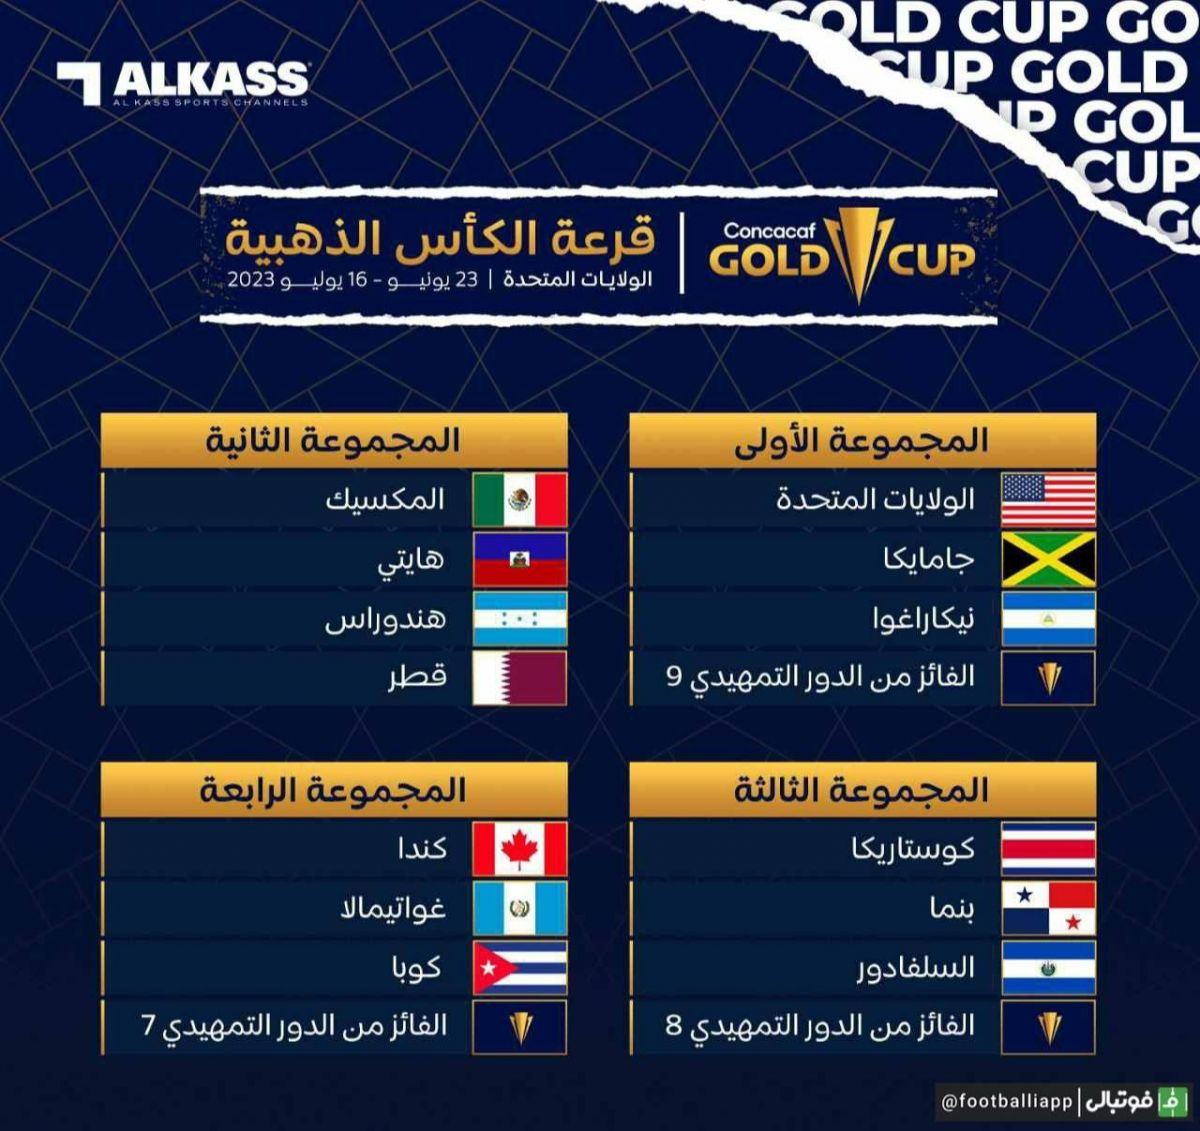 اینفوگرافی/ قرعه‌کشی رقابت‌های جام طلایی کونکاکاف 2023 انجام شد و قطر به عنوان تیم مهمان در این رقابت‌ها در گروه مکزیک، هائیتی و هندوراس حضور خواهد داشت